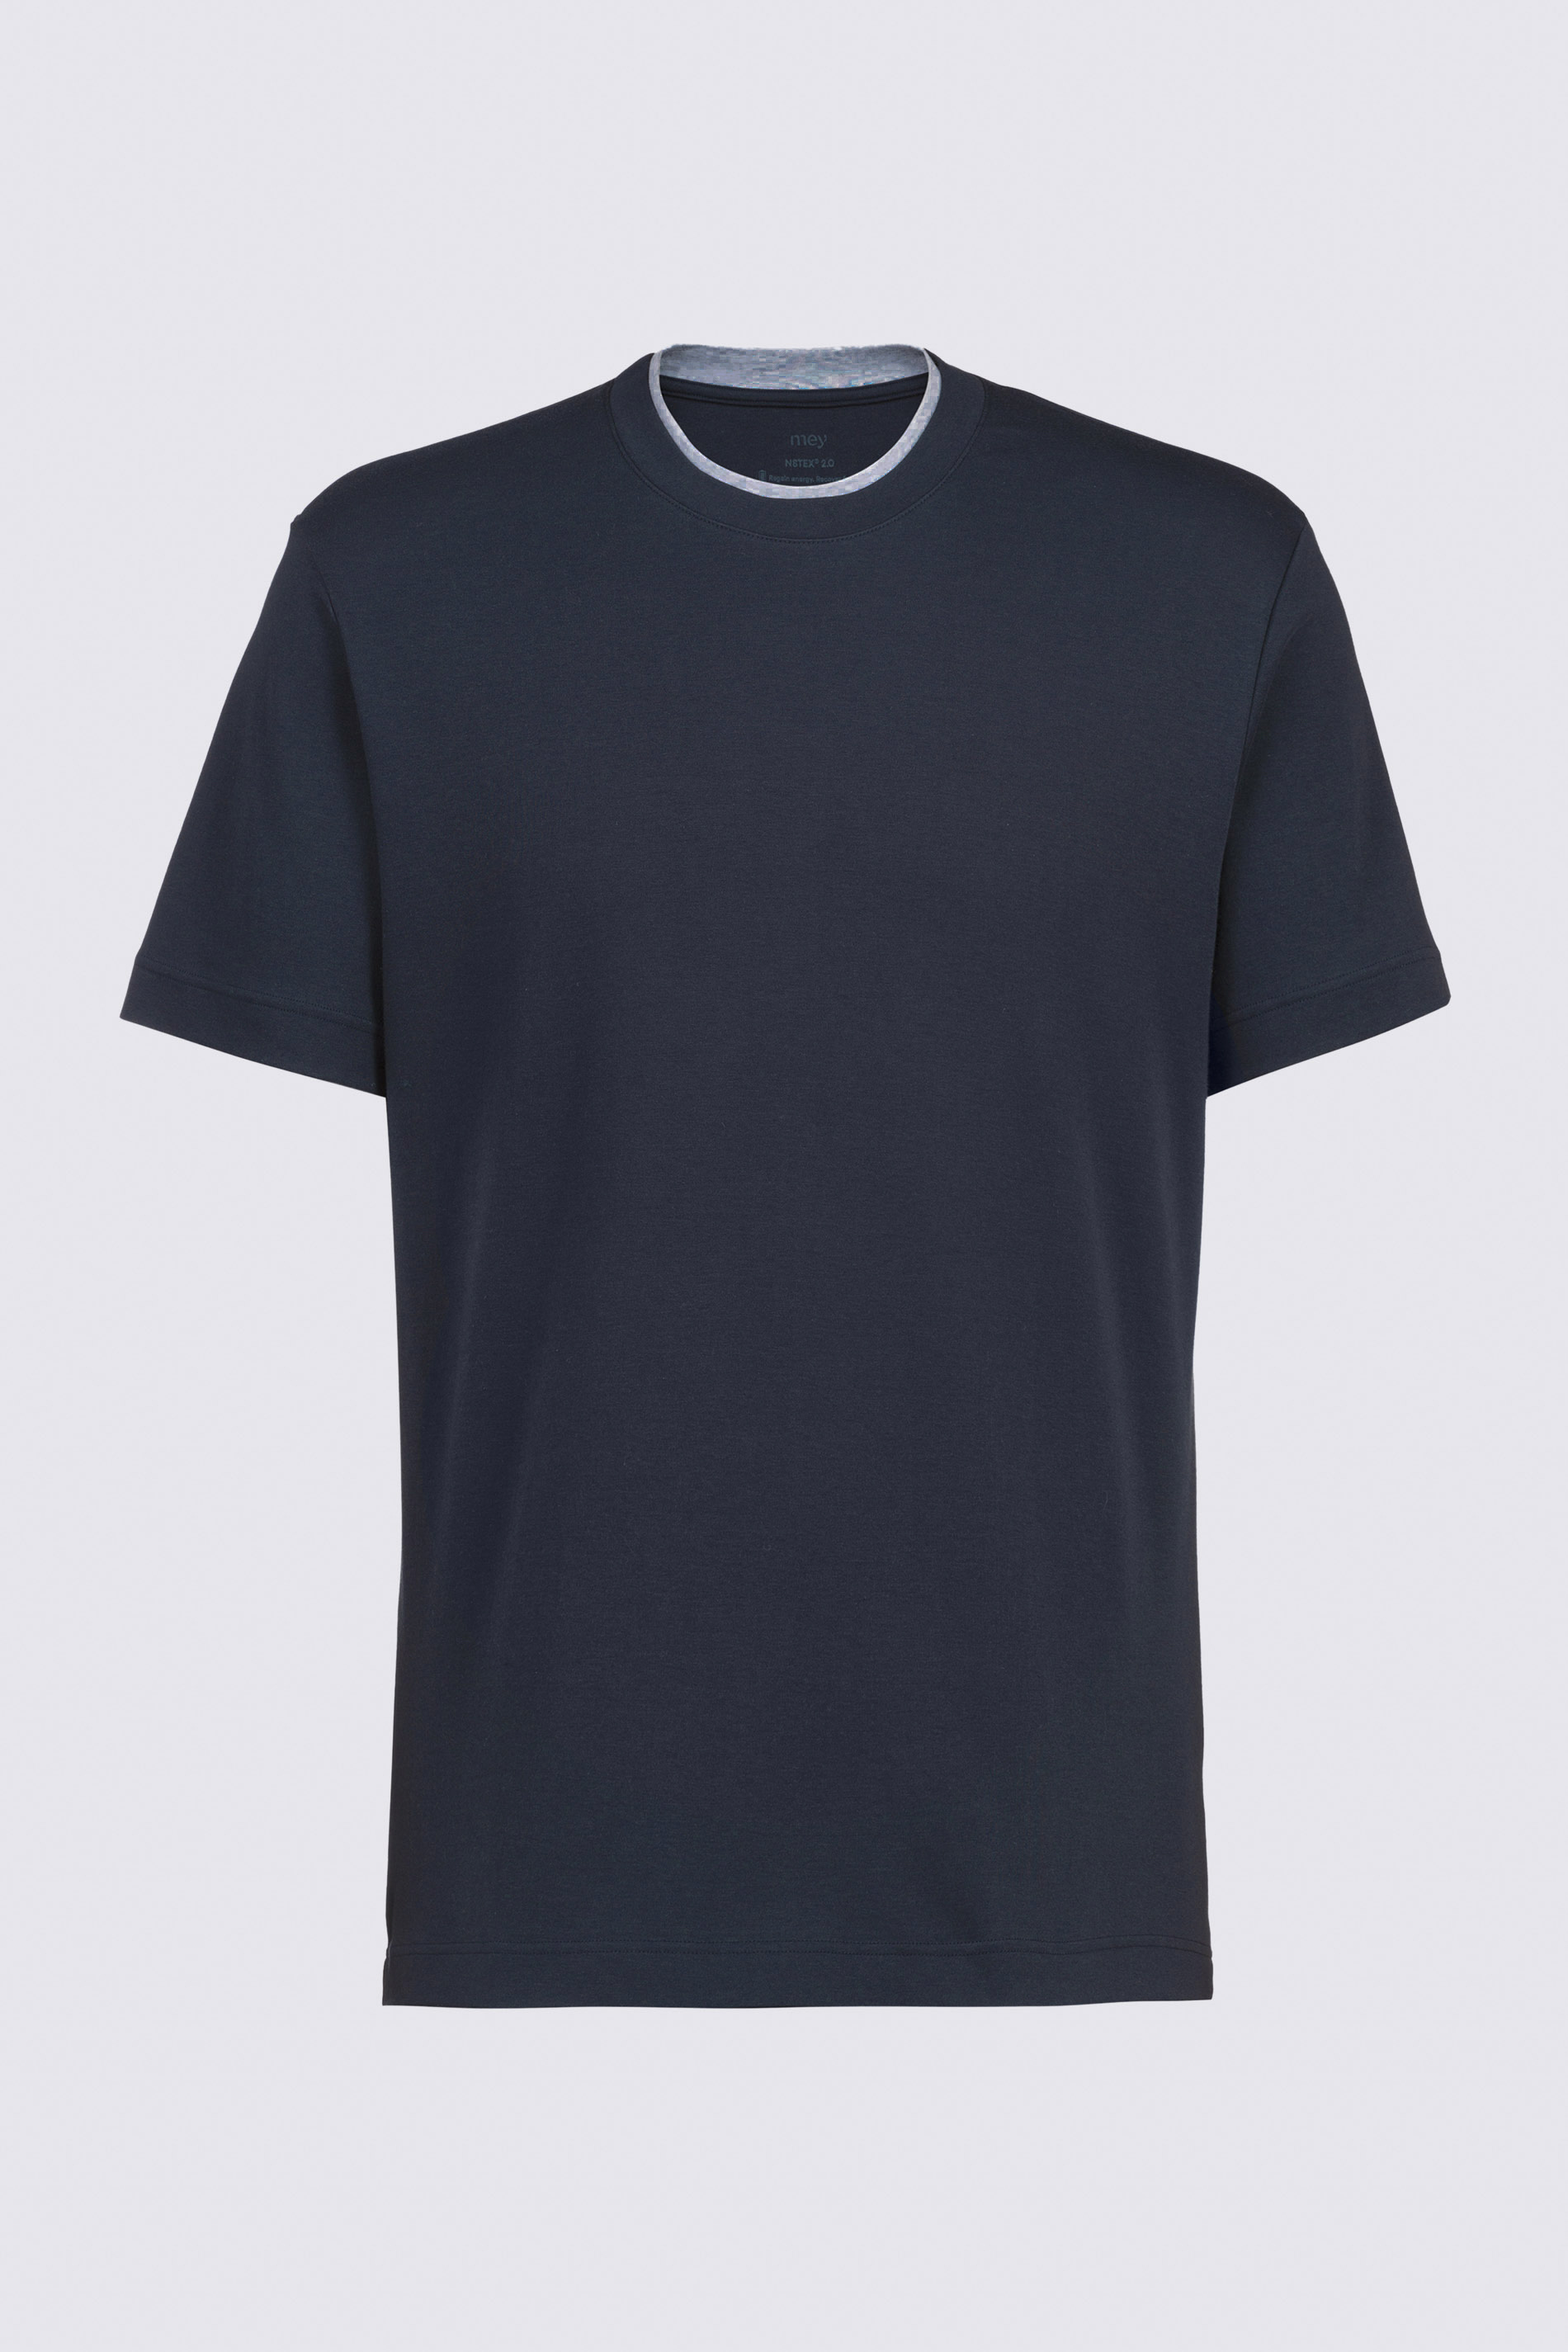 T-Shirt Serie N8TEX 2.0 Freisteller | mey®